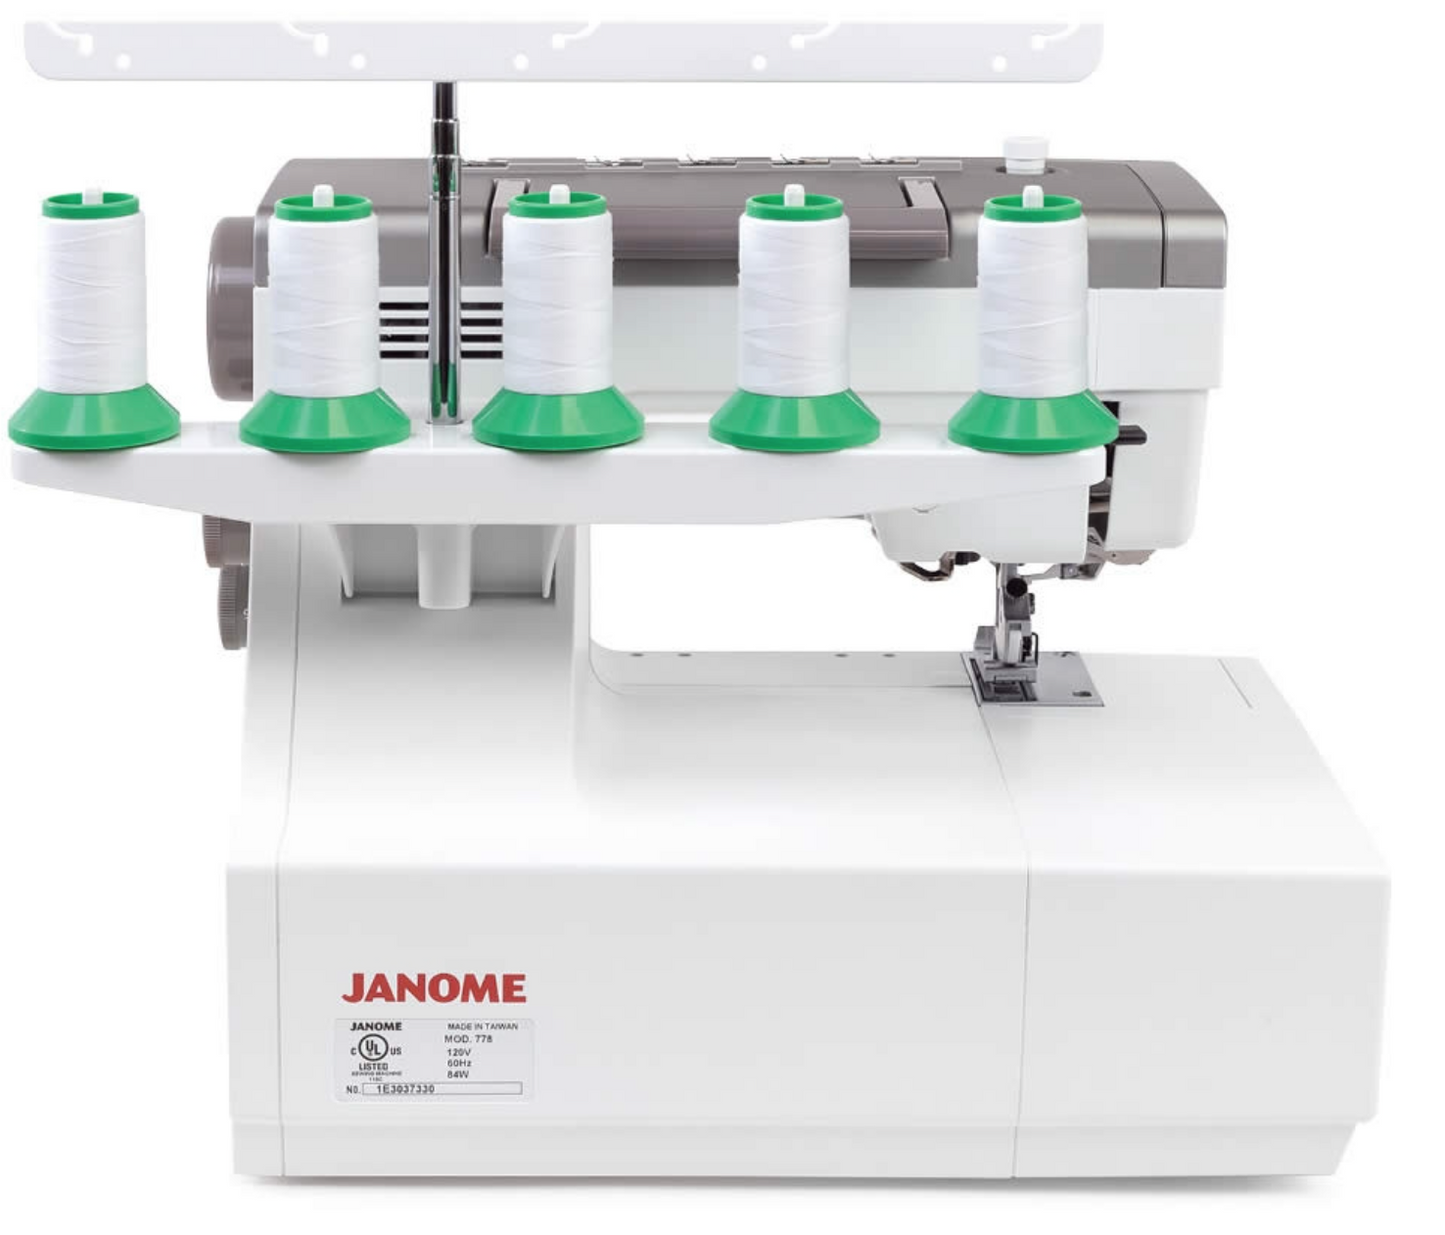 Janome CP3000P Cover Stitch